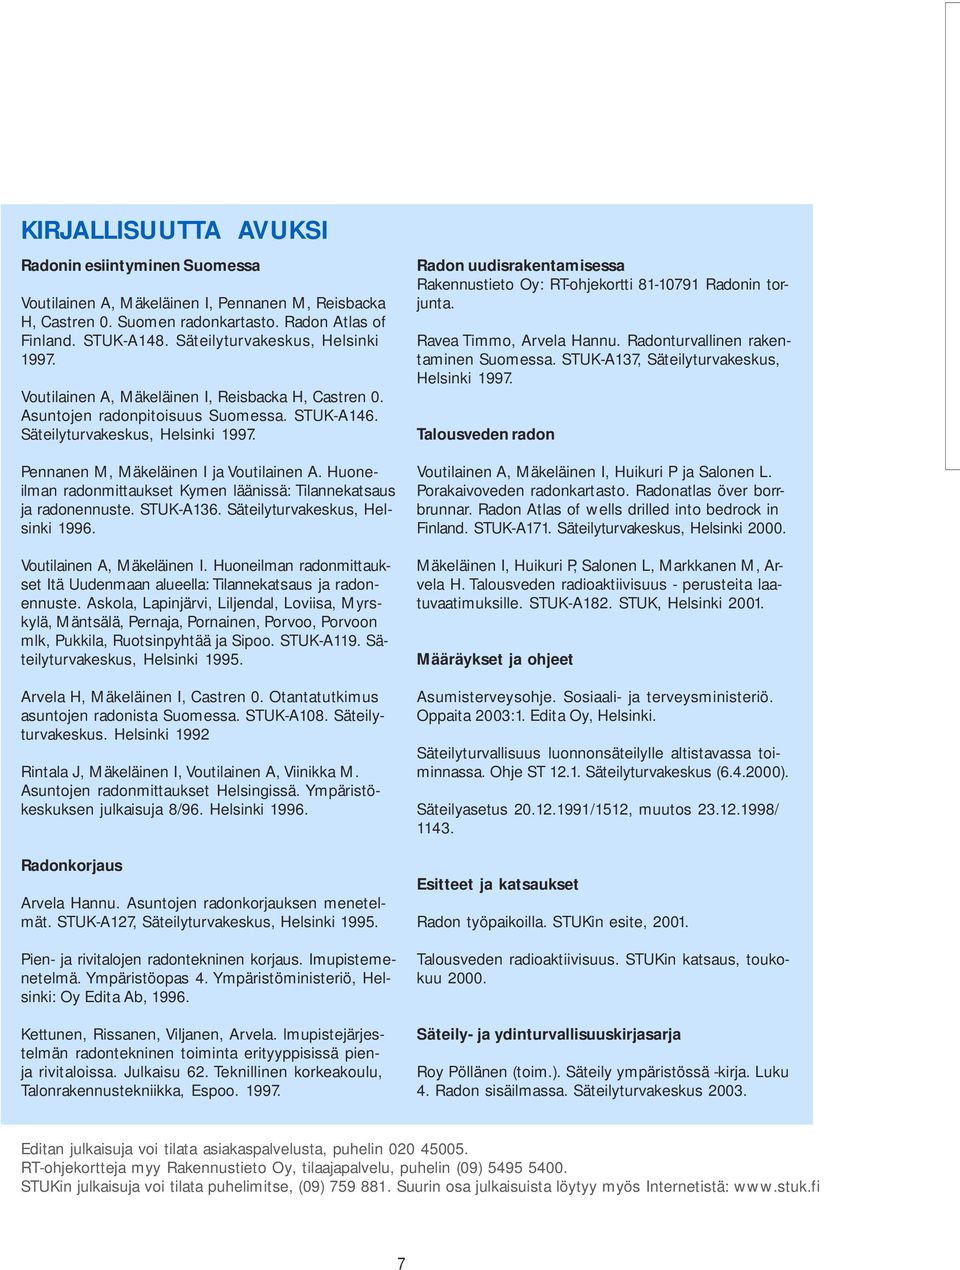 Pennanen M, Mäkeläinen I ja Voutilainen A. Huoneilman radonmittaukset Kymen läänissä: Tilannekatsaus ja radonennuste. STUK-A136. Säteilyturvakeskus, Helsinki 1996. Voutilainen A, Mäkeläinen I.